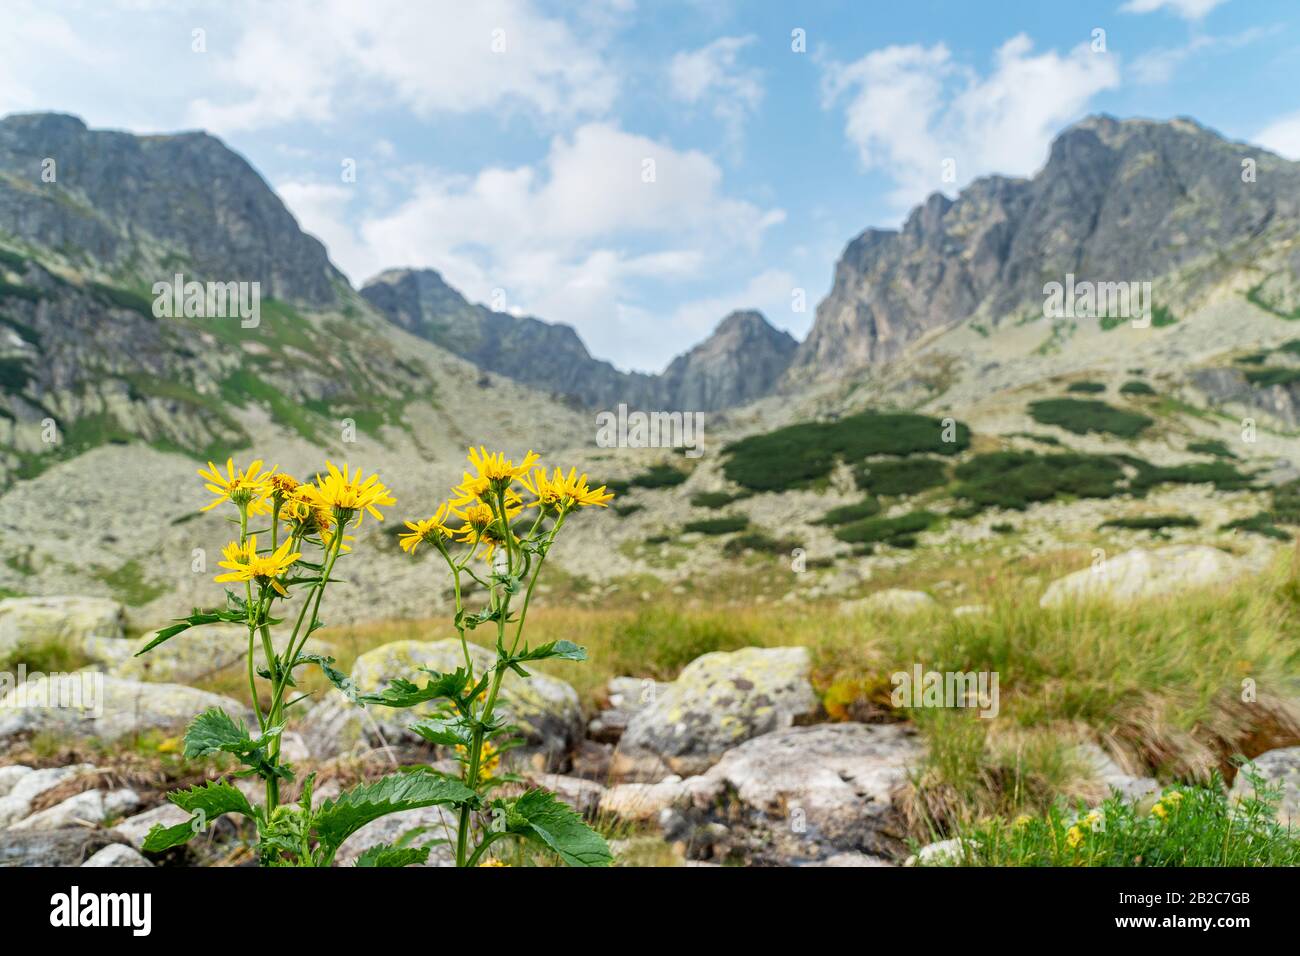 beau paysage de montagne avec des fleurs jaunes au premier plan Banque D'Images